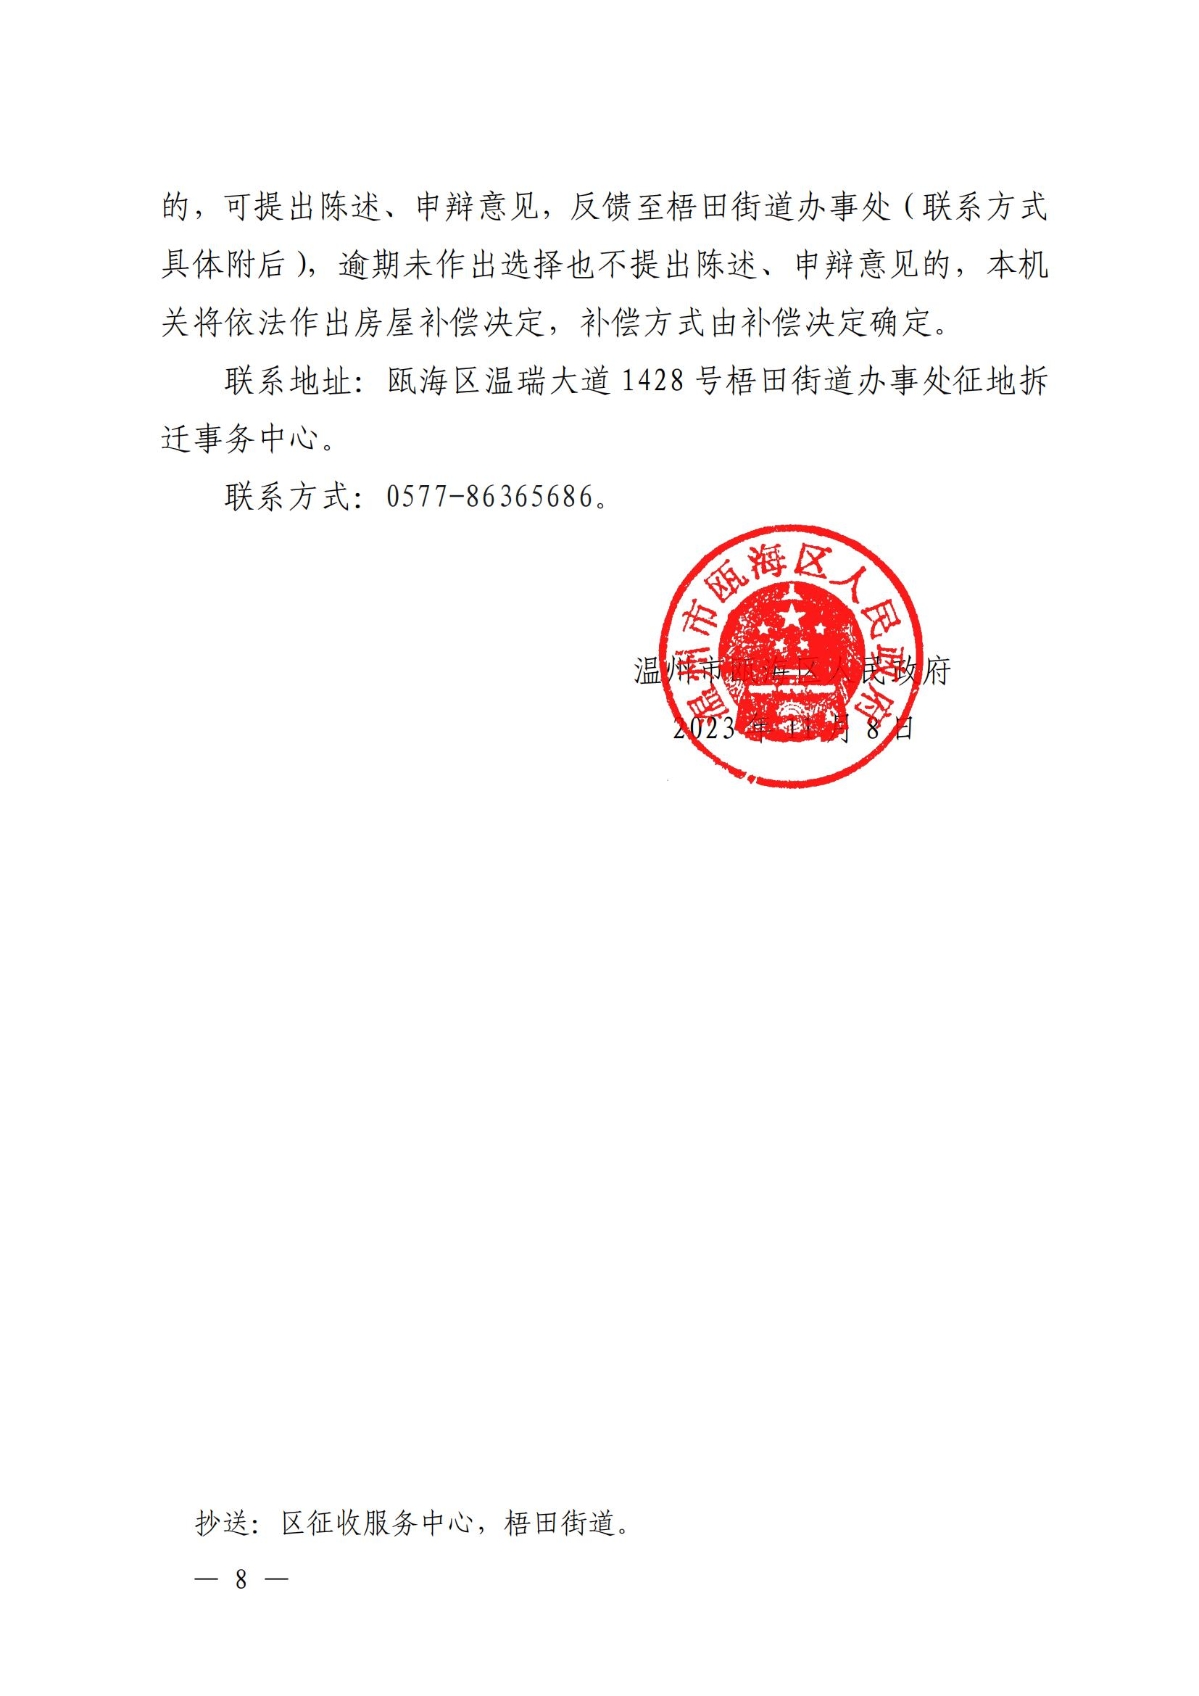 关于对温州市瓯海鹿达包装机械厂房屋的补偿决定方案_07.jpg